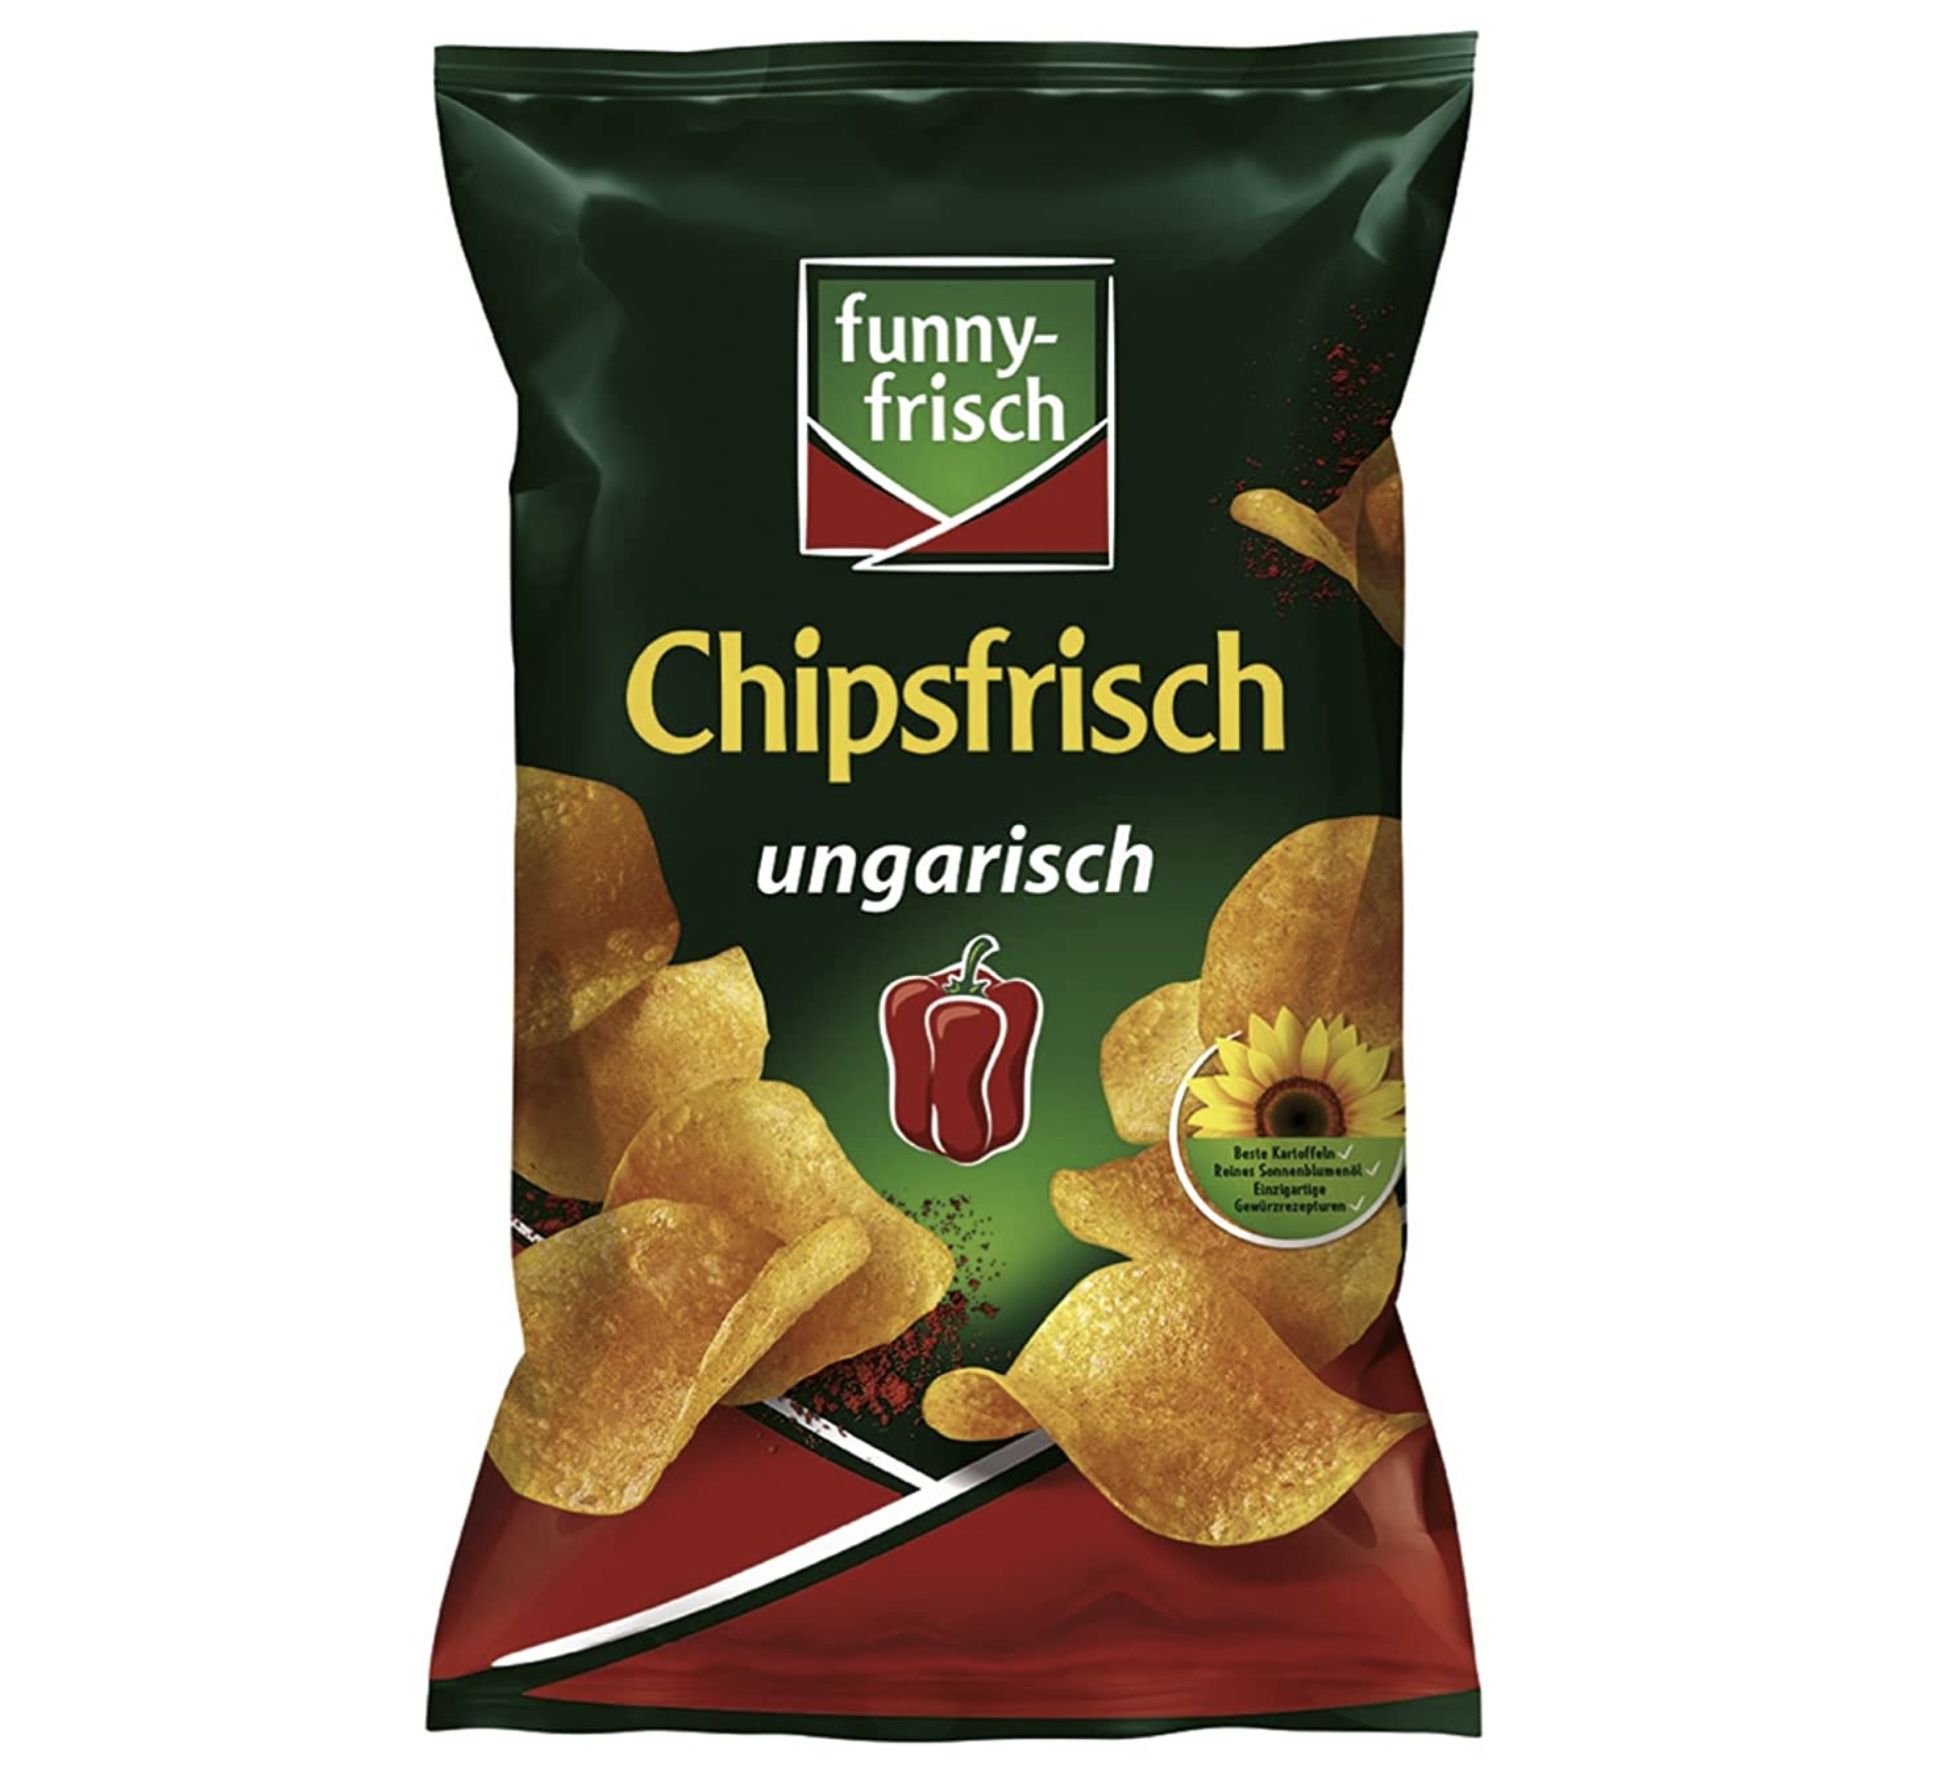 funny frisch Chipsfrisch ungarisch (175g) für 0,98€